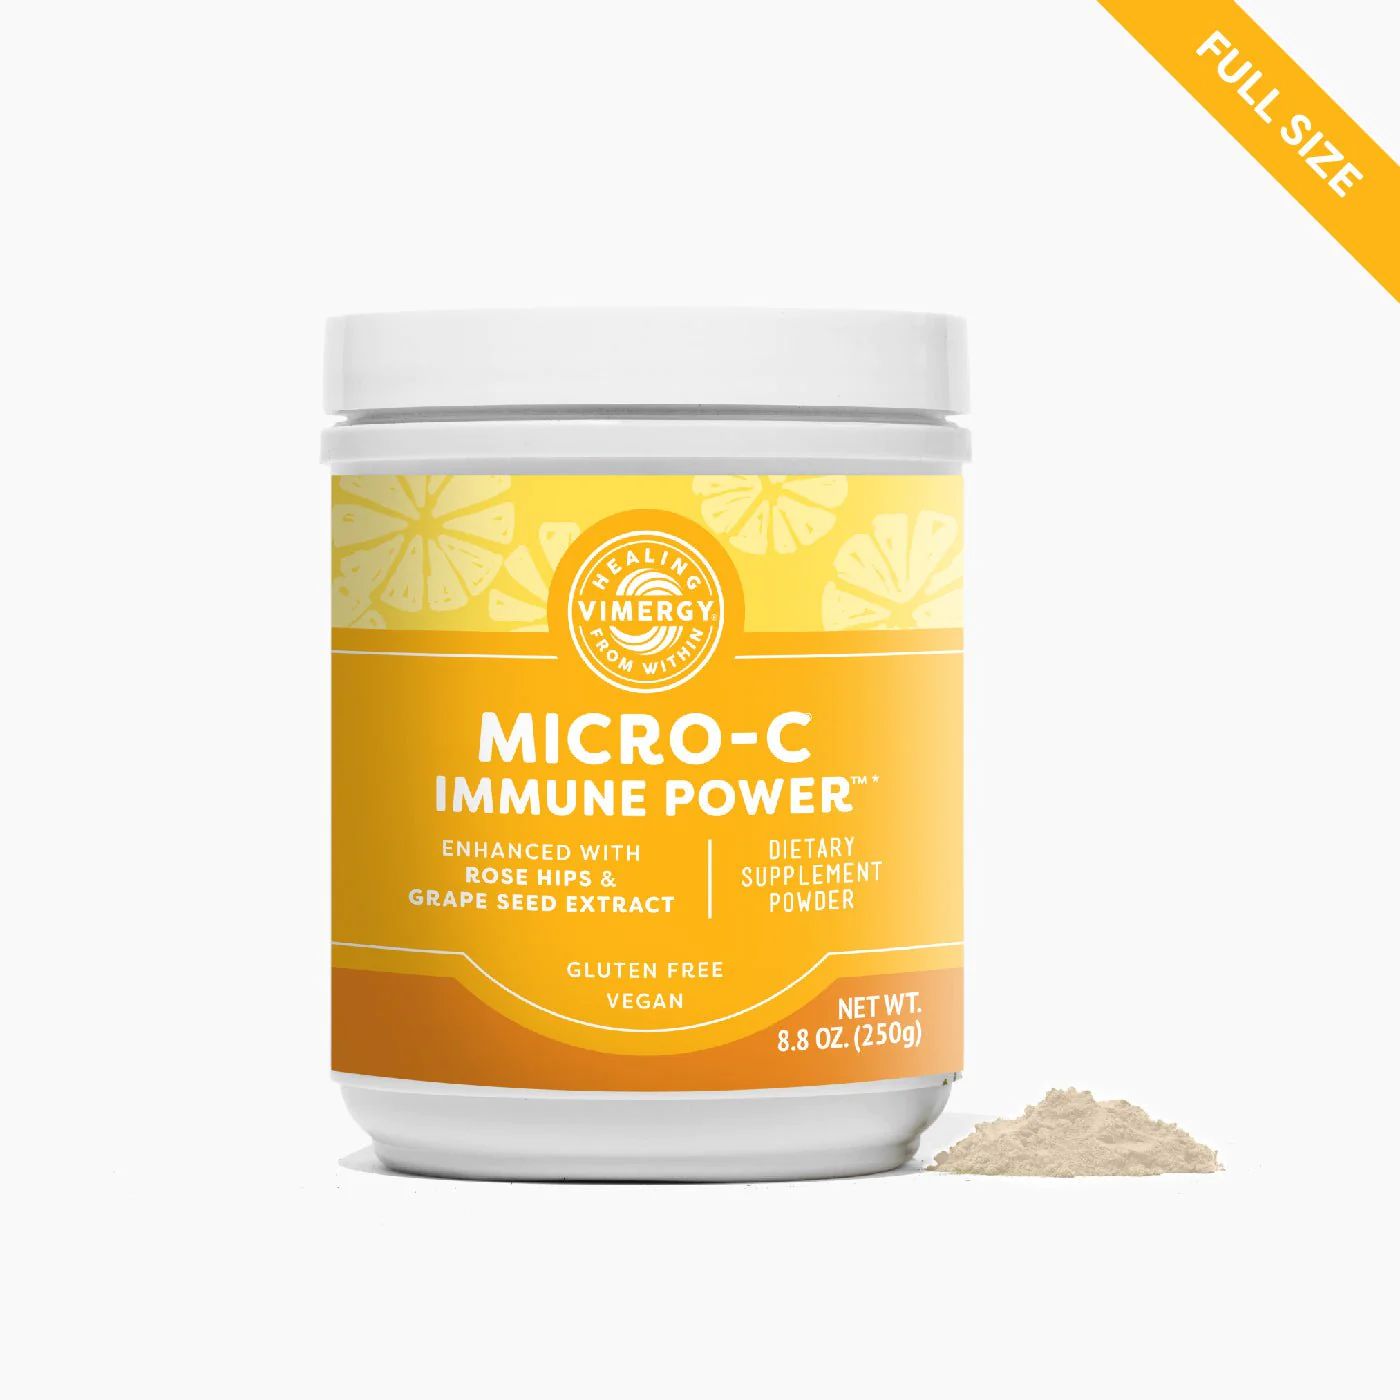 Micro-C Immune Power™* | Vimergy